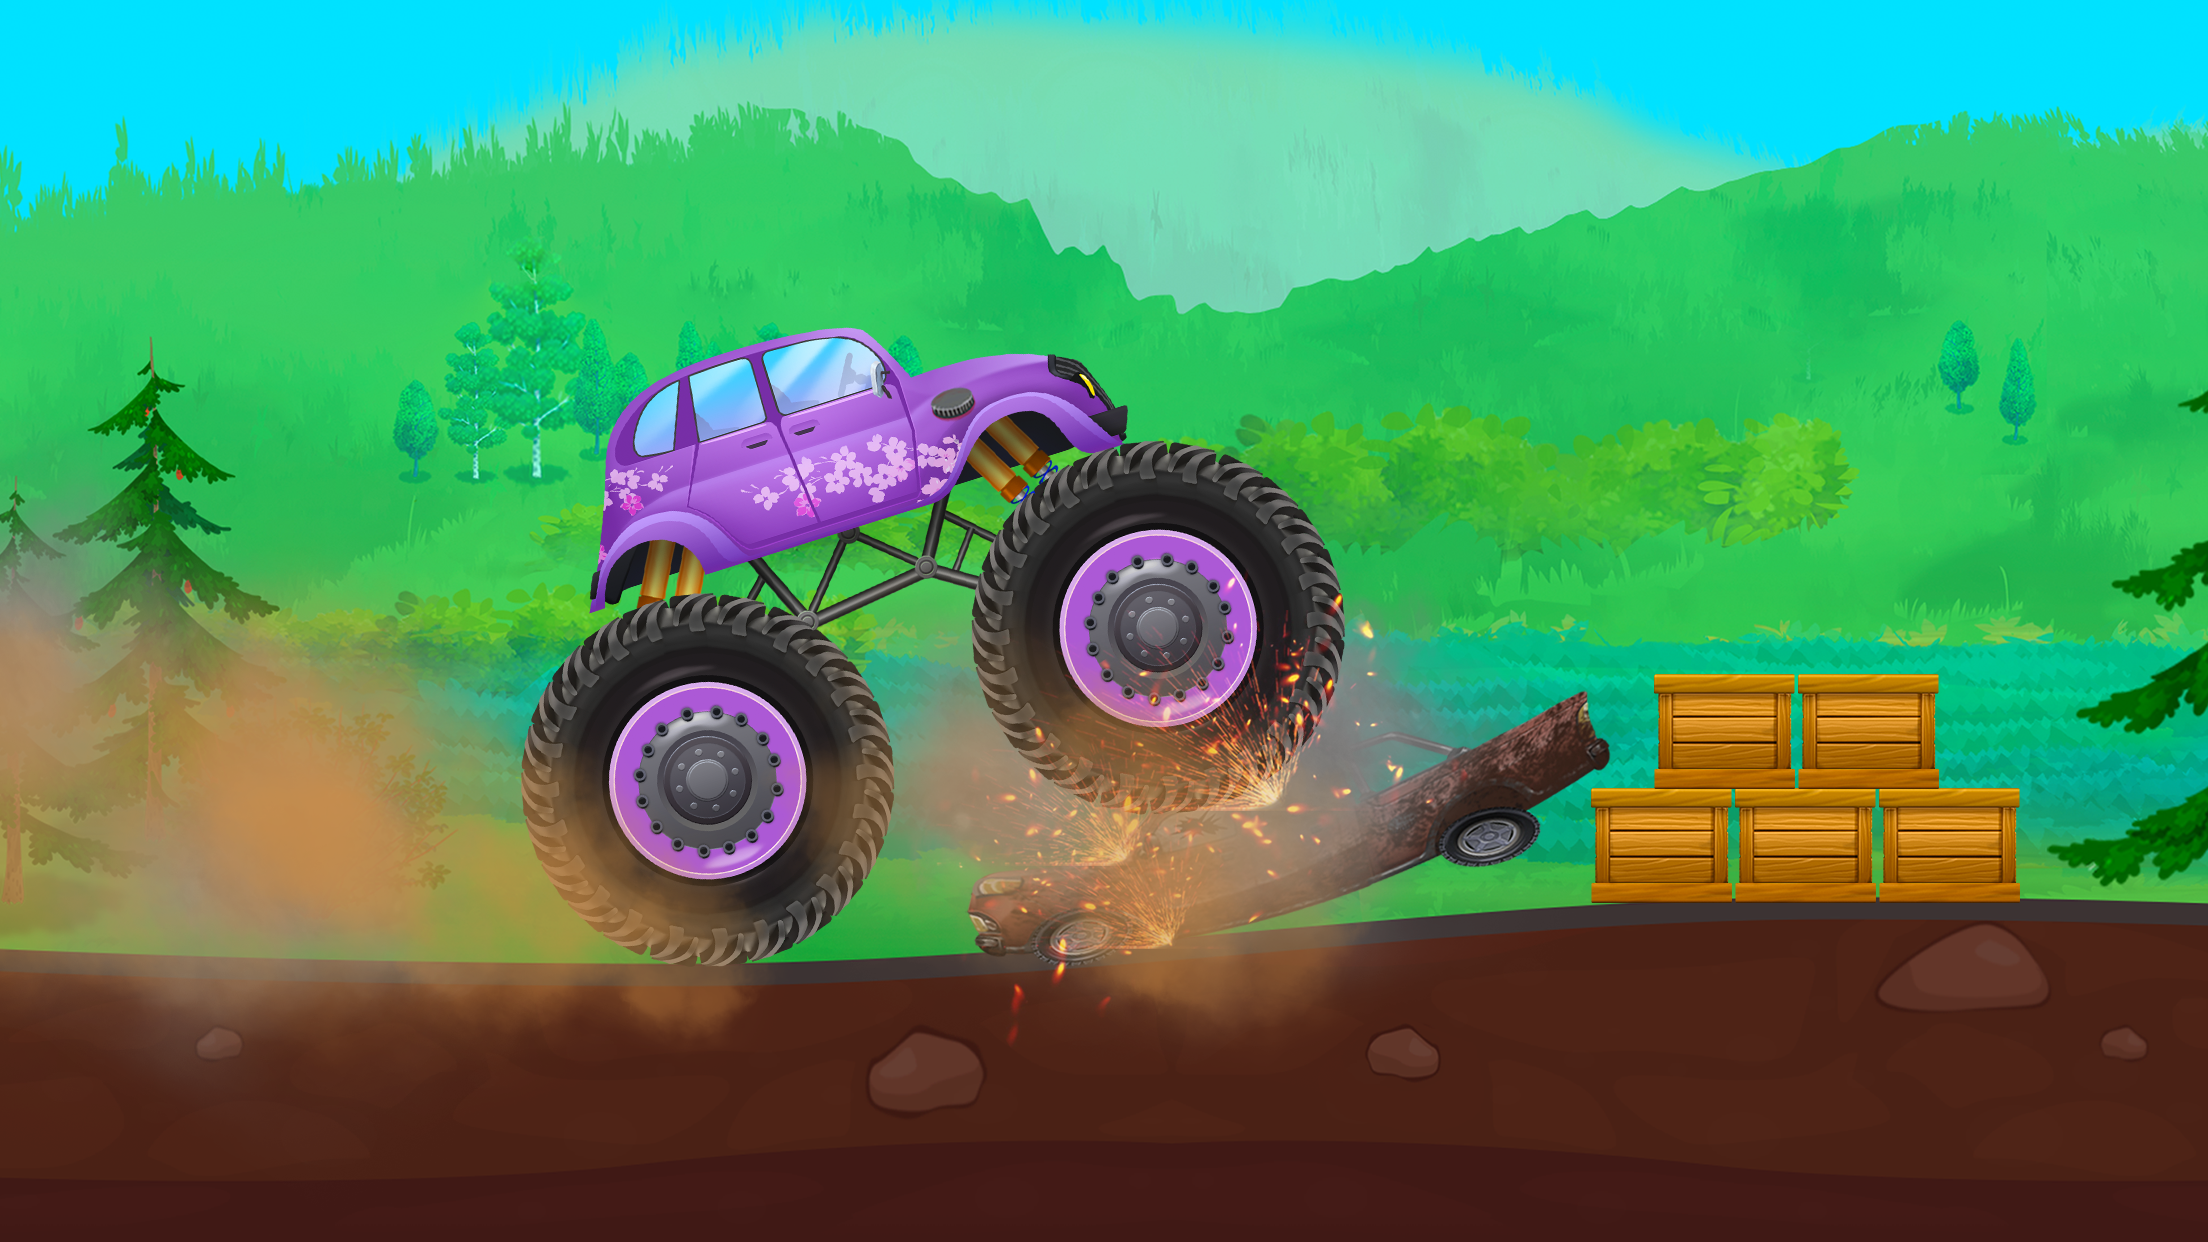 Screenshot 1 of Karera ng Monster Trucks para sa mga Bata 